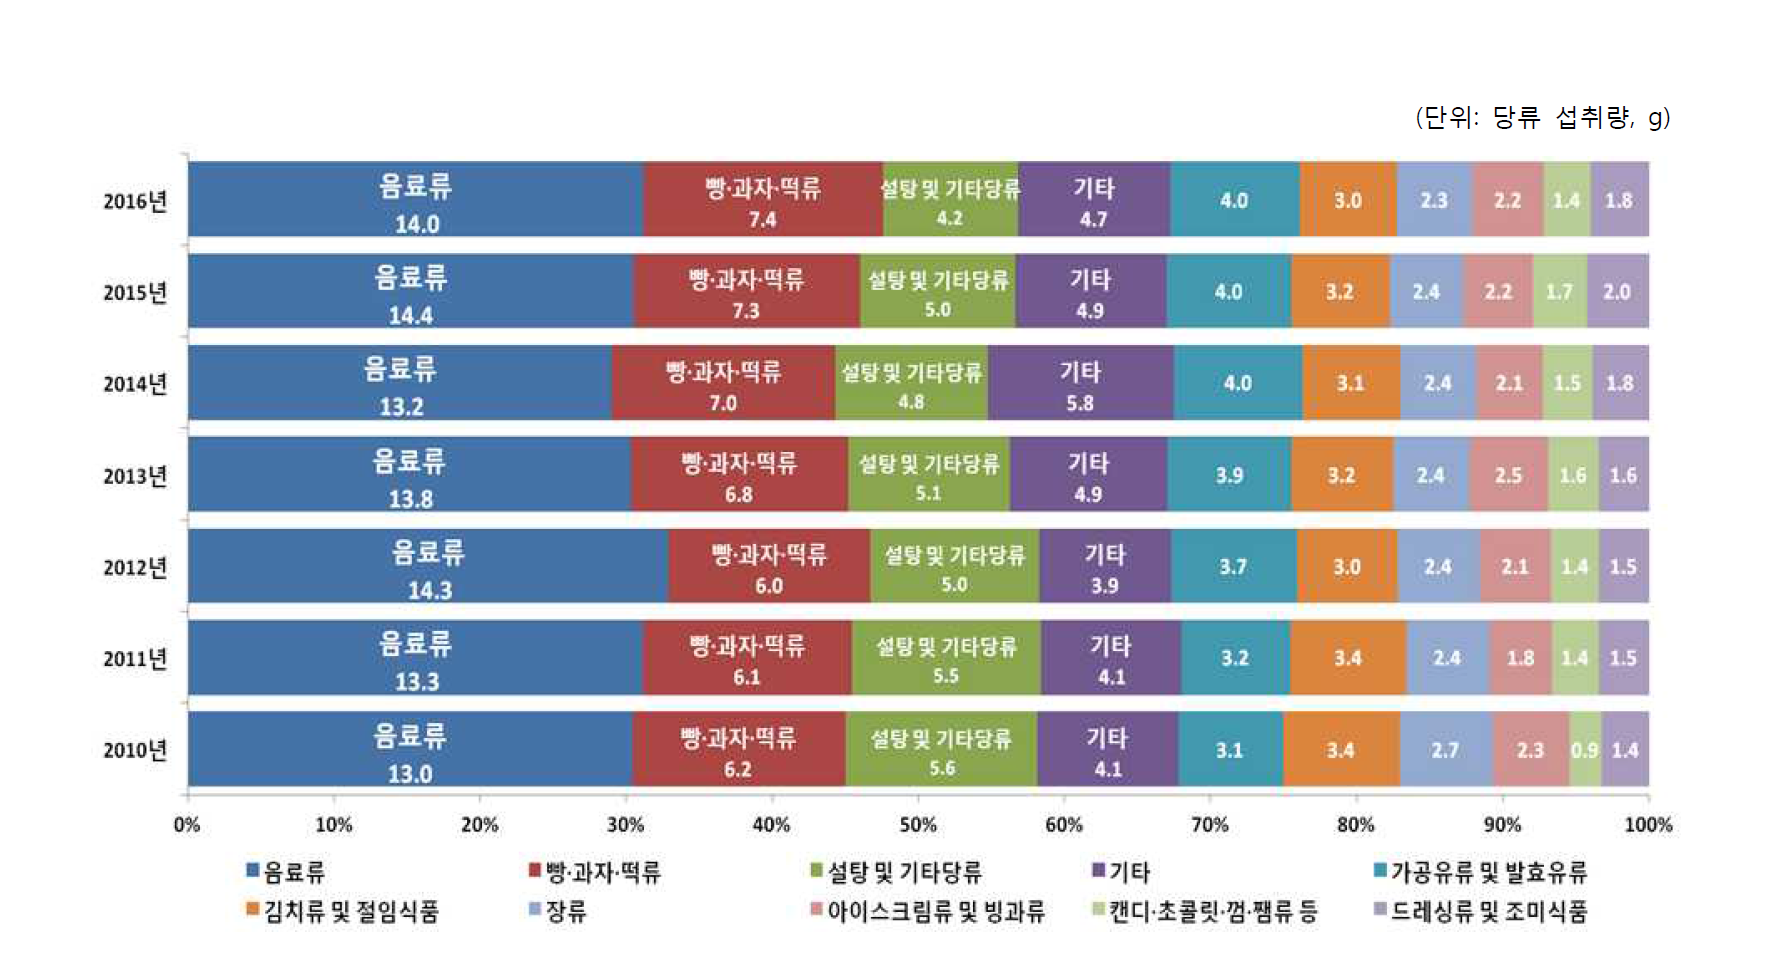 연도별 가공식품 분류별 당류 섭취량 추이(10군, 2010-2016년)